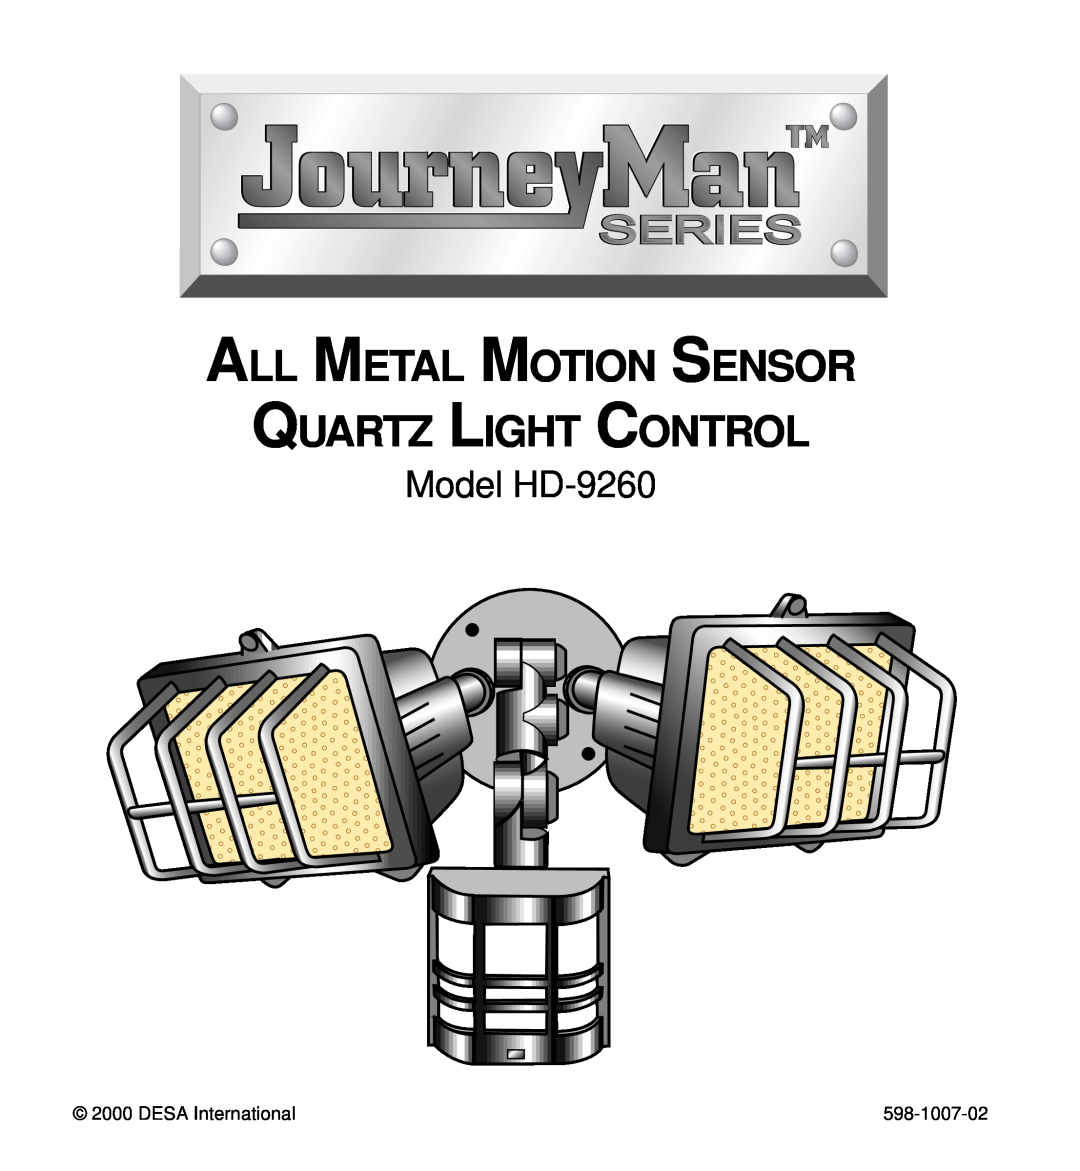 Desa manual Model HD-9260, All Metal Motion Sensor, Quartz Light Control, DESA International, 598-1007-02 